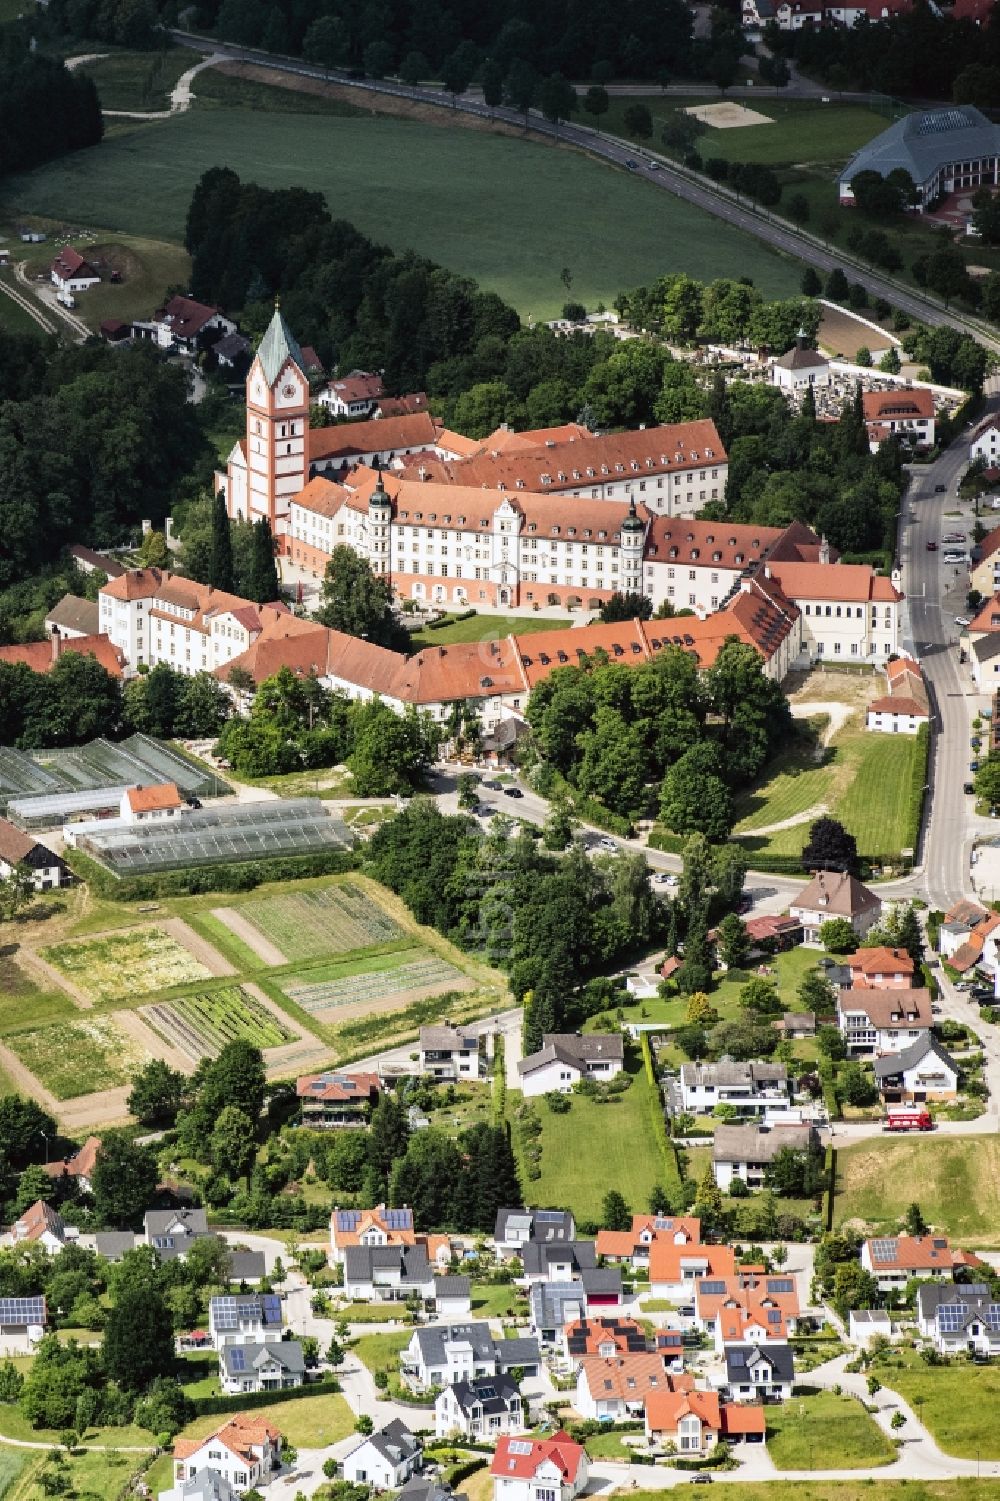 Luftbild Scheyern - Gebäudekomplex des Klosters in Scheyern im Bundesland Bayern, Deutschland